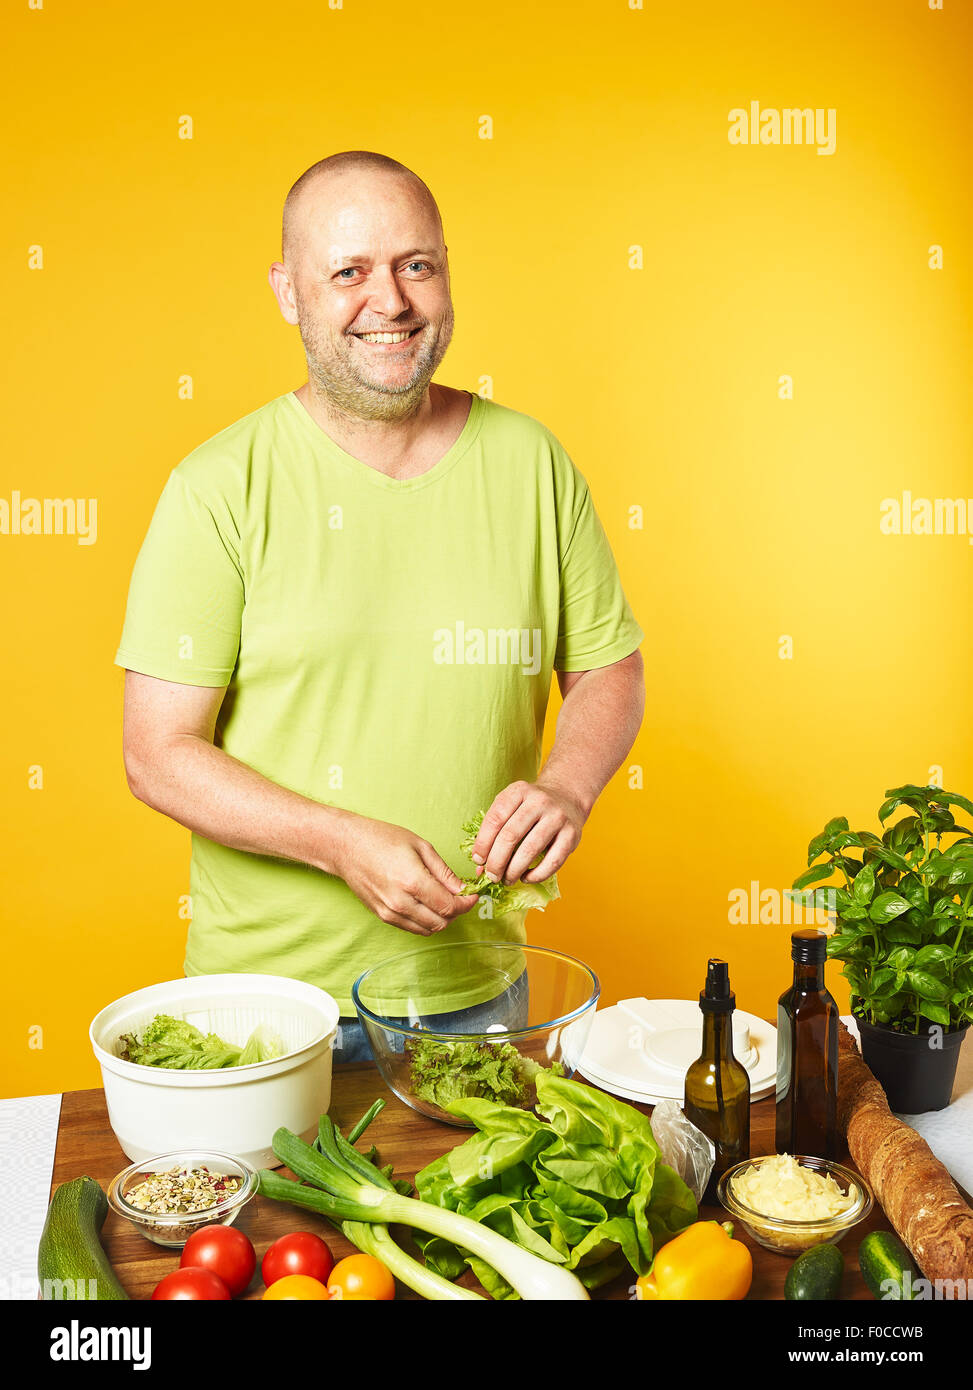 Salade fraîche ingrédients sur la table, homme d'âge moyen et salade Salade cook utilisé spin cheveux - copie espace et fond jaune Banque D'Images